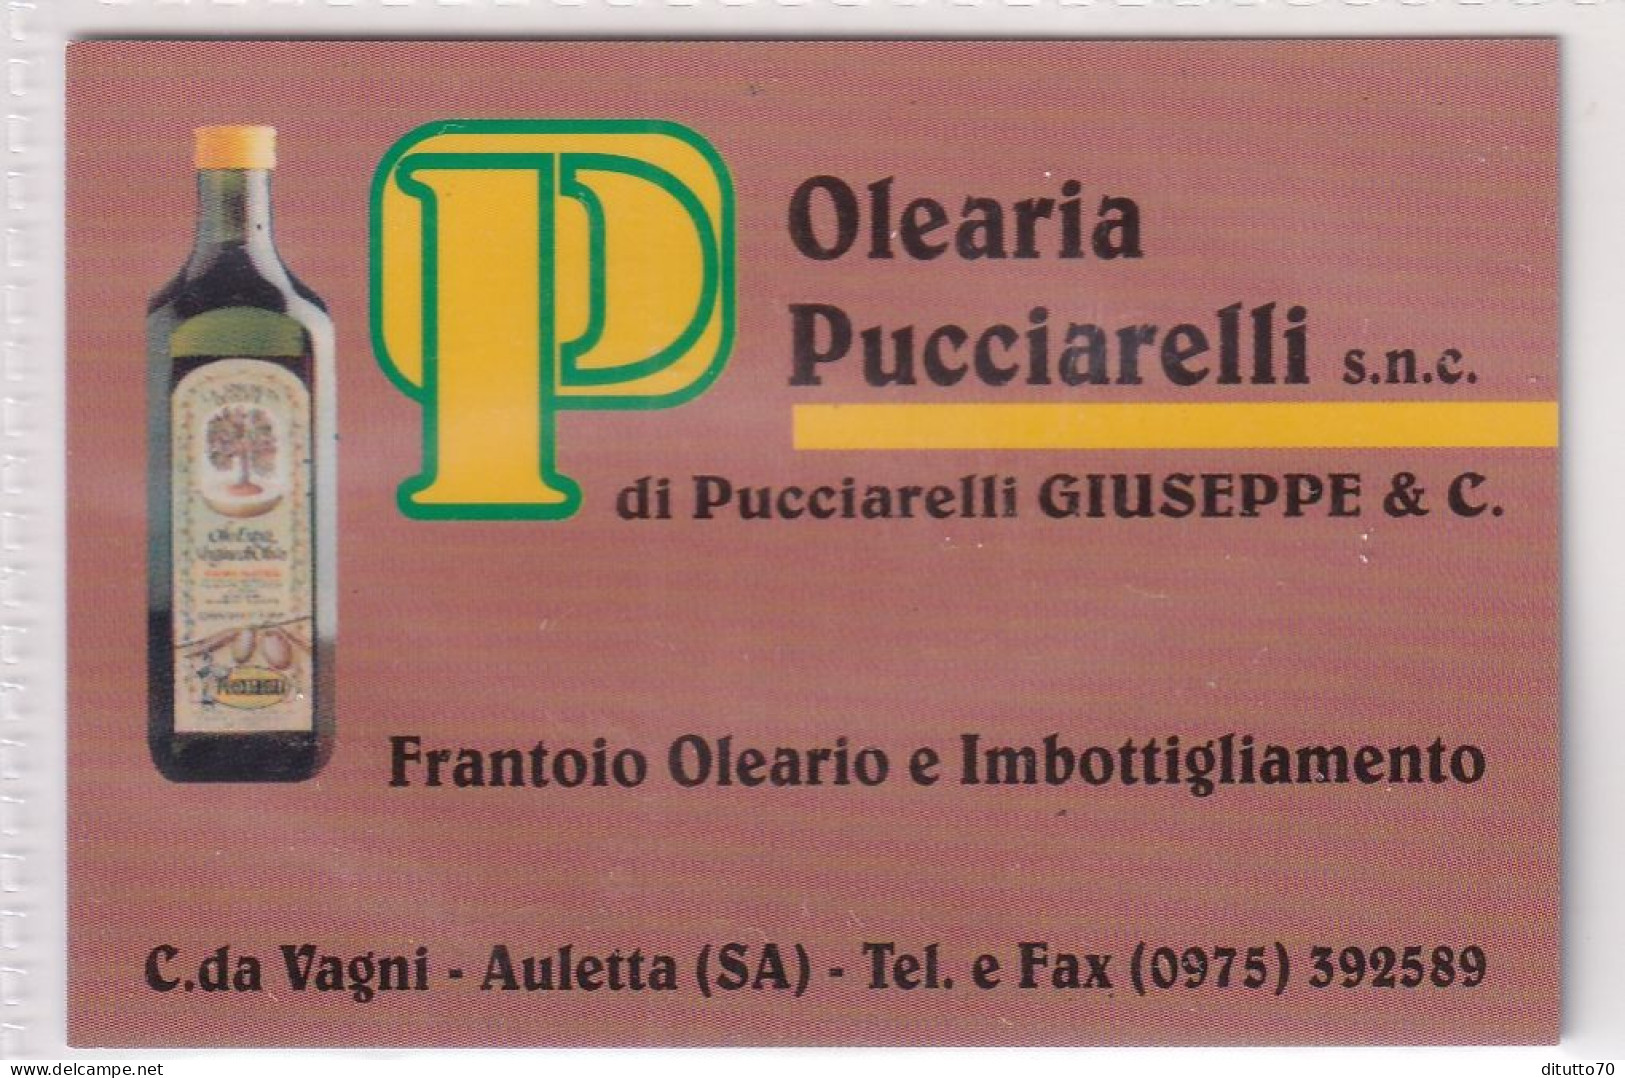 Calendarietto - Olearia Pucciarelli - Auletta - Salerno - Anno 1998 - Small : 1991-00